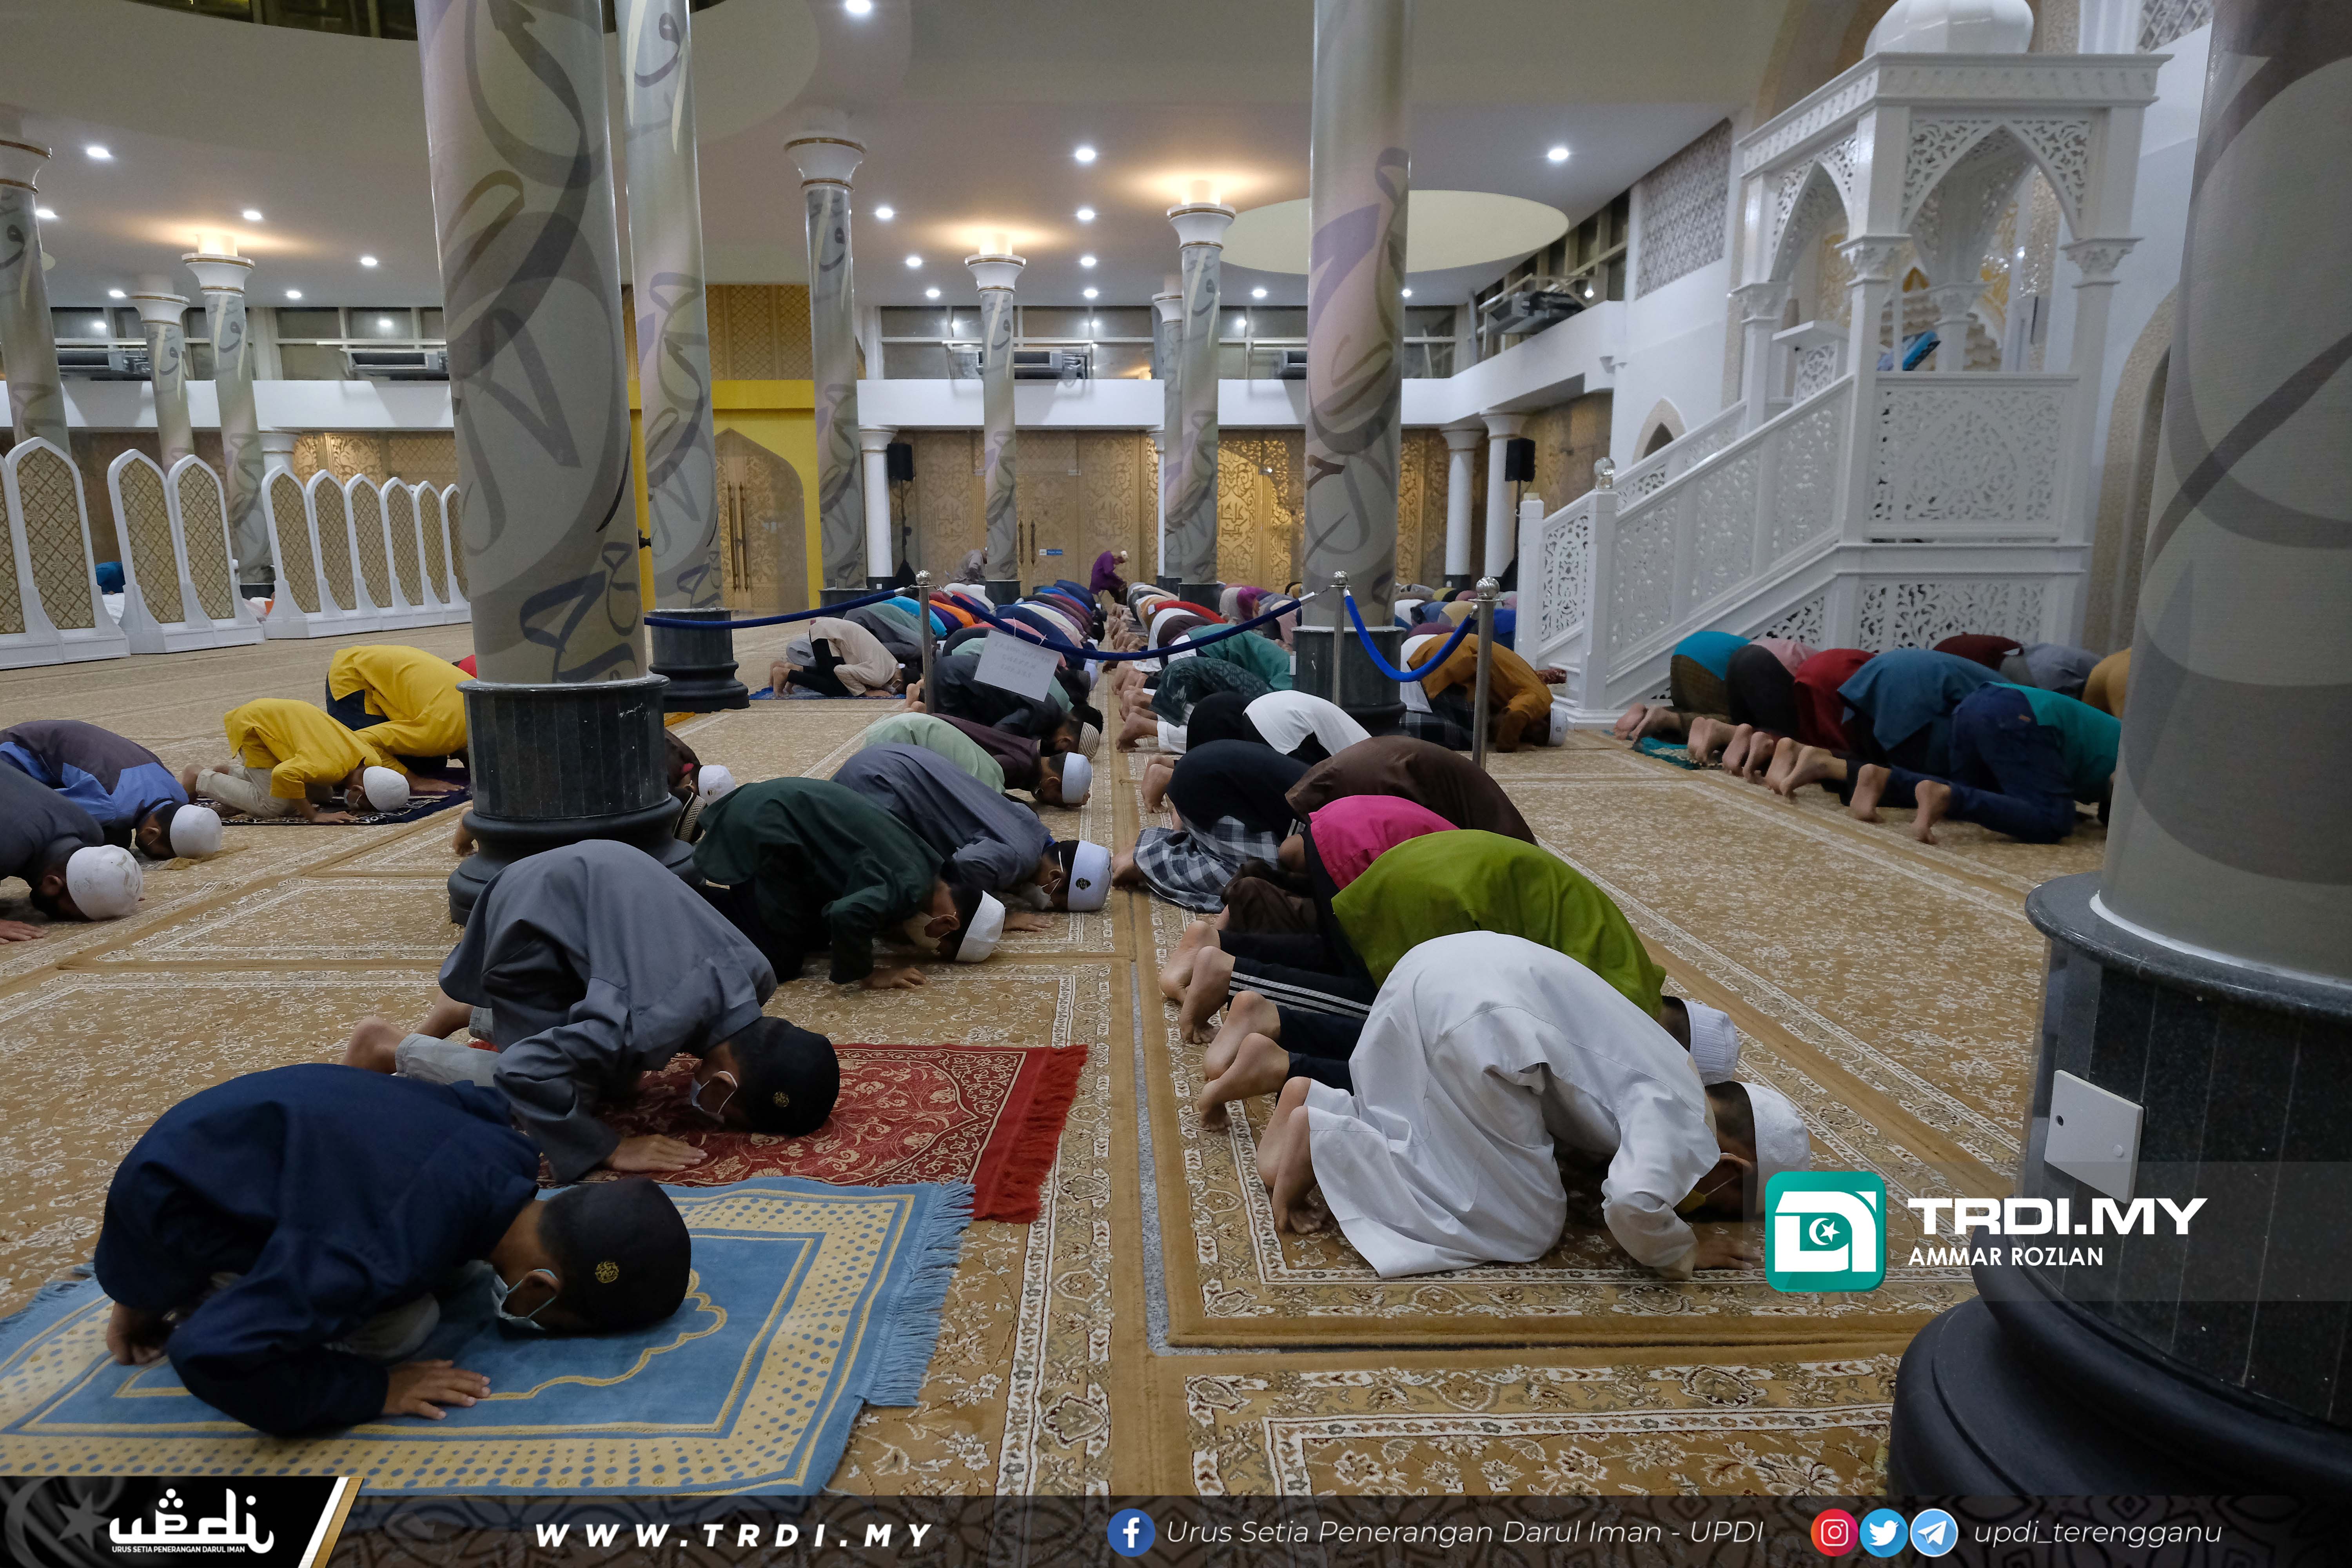 Keadaan terkini Masjid Kristal, Taman Tamadun Islam (TTI) Kuala Terengganu yang mula dibuka semula sejak 1 Ramadan lalu, Alhamdulillah.  Orang ramai dijemput untuk mengimarahkan masjid ini. Semoga dengan suasana baru, Ramadan kita lebih bermakna.